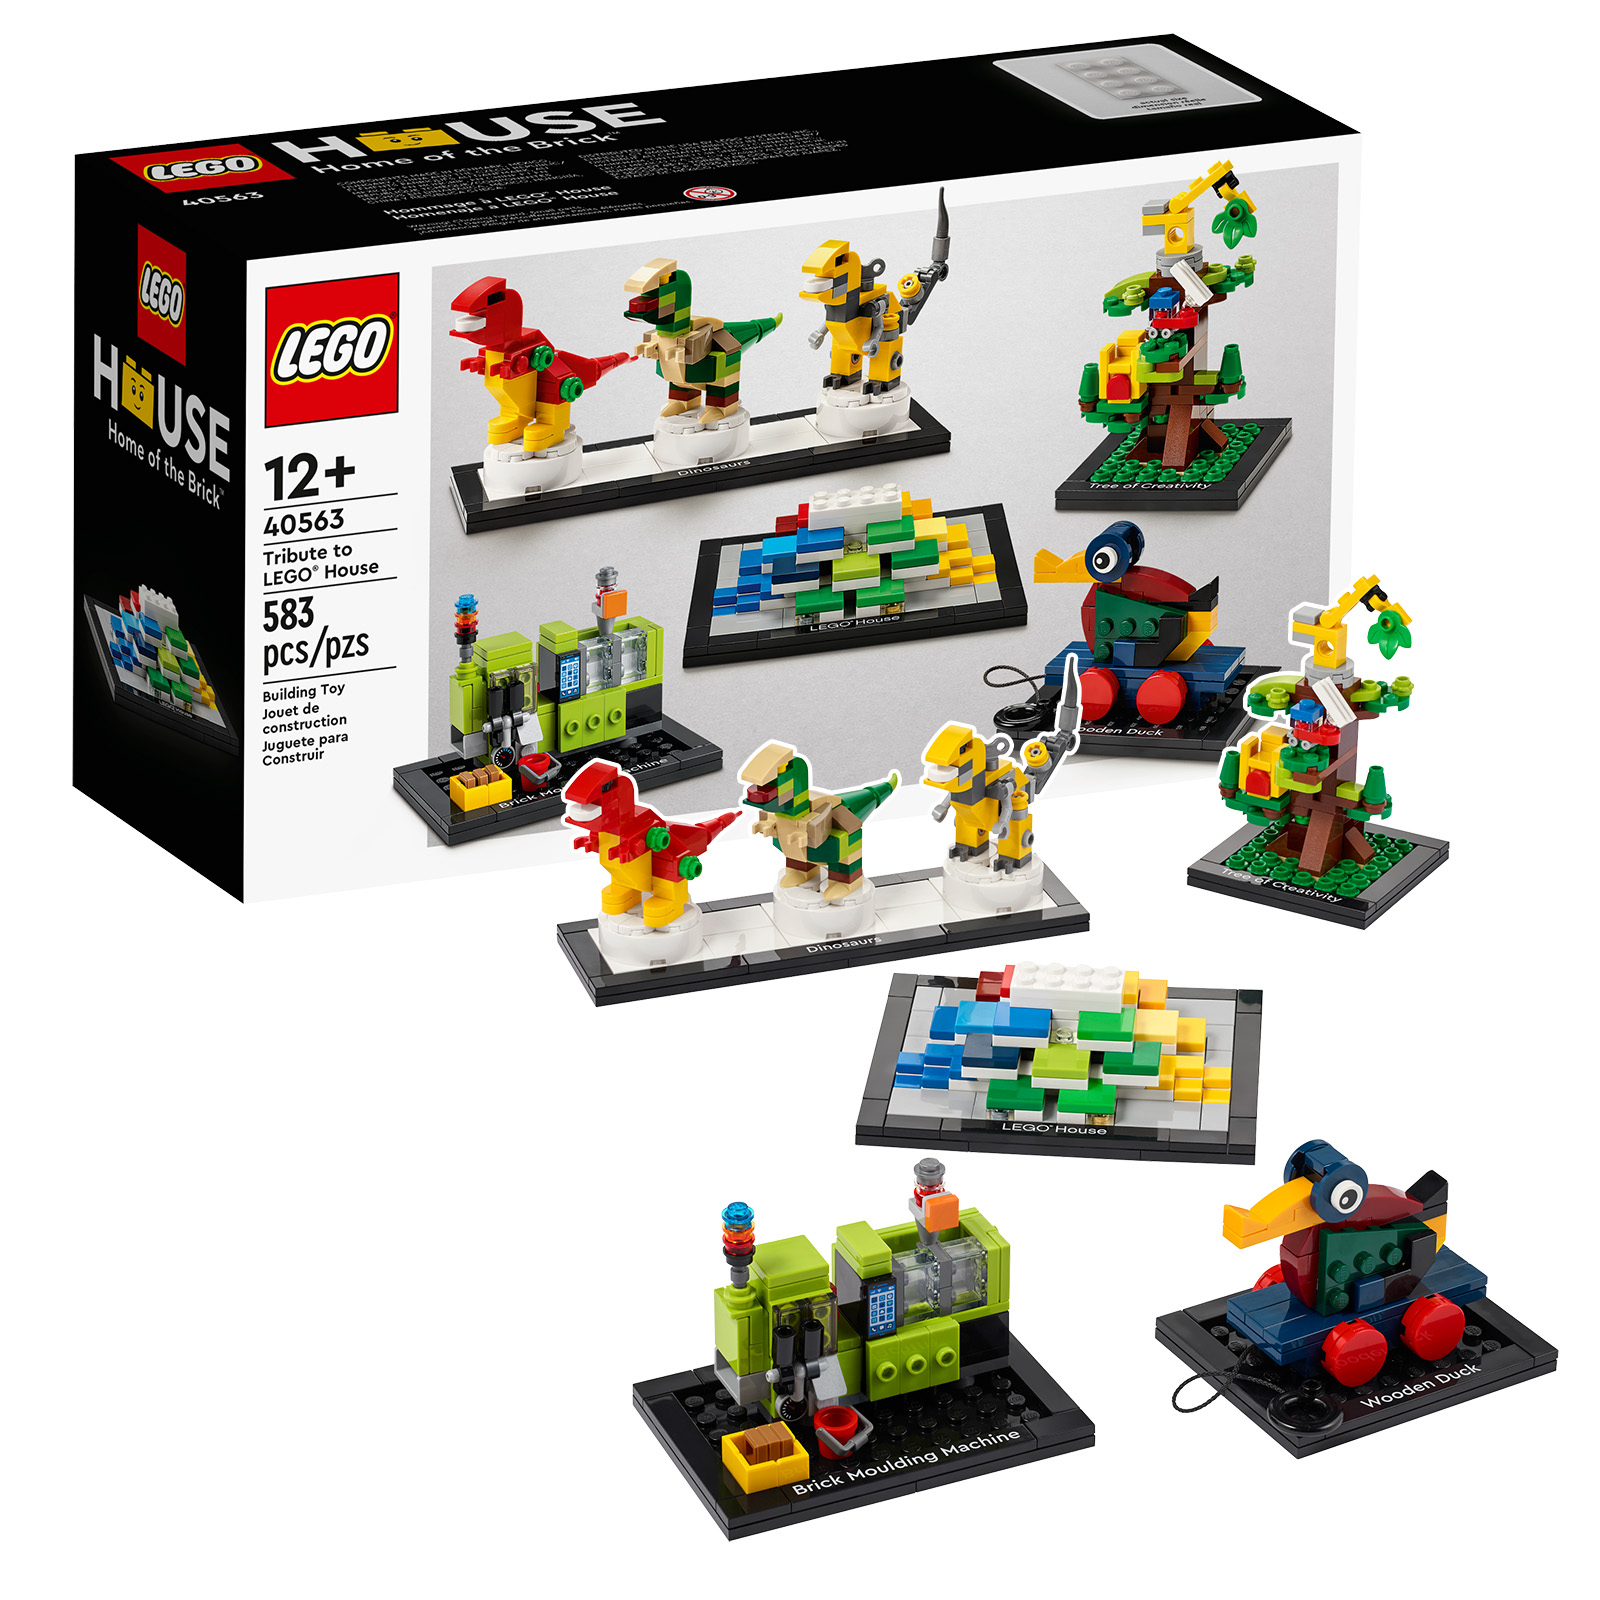 Lembrete: últimas horas para obter uma cópia do conjunto LEGO 40563 Tribute to LEGO House